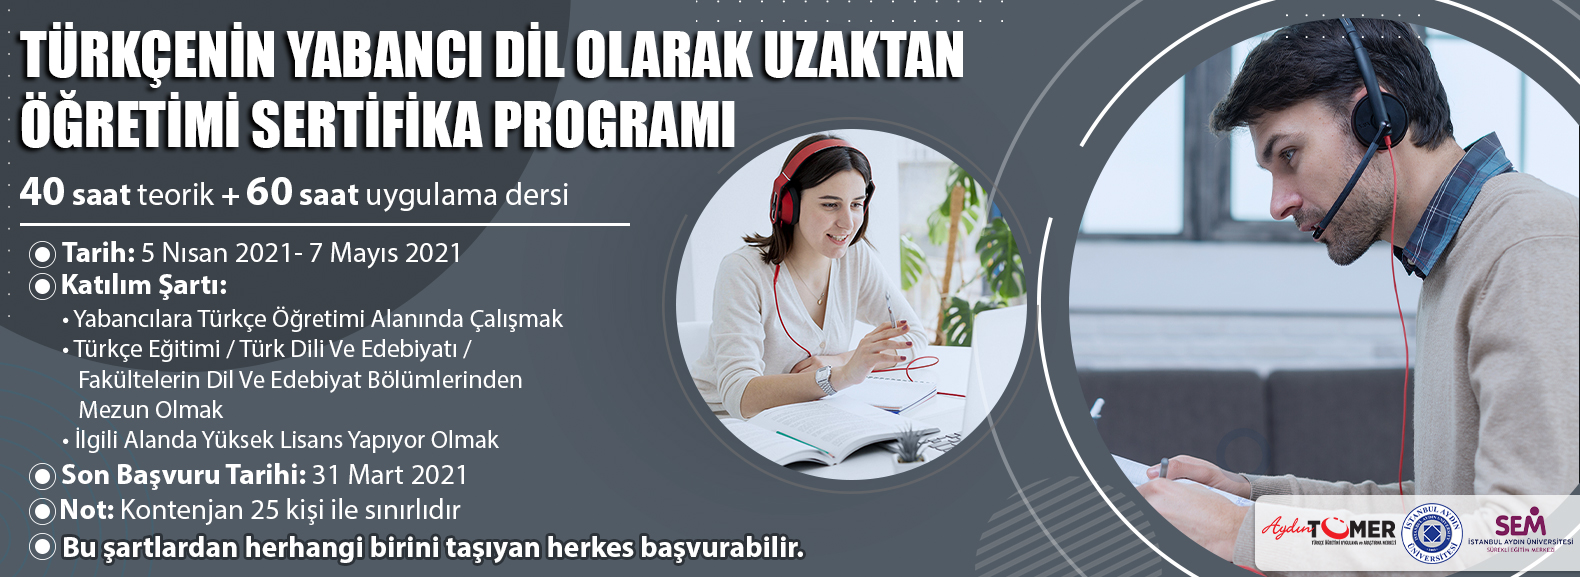 Türkçenin Yabancı Dil Olarak Uzaktan Öğretimi Sertifika Programı - Aydın TÖMER